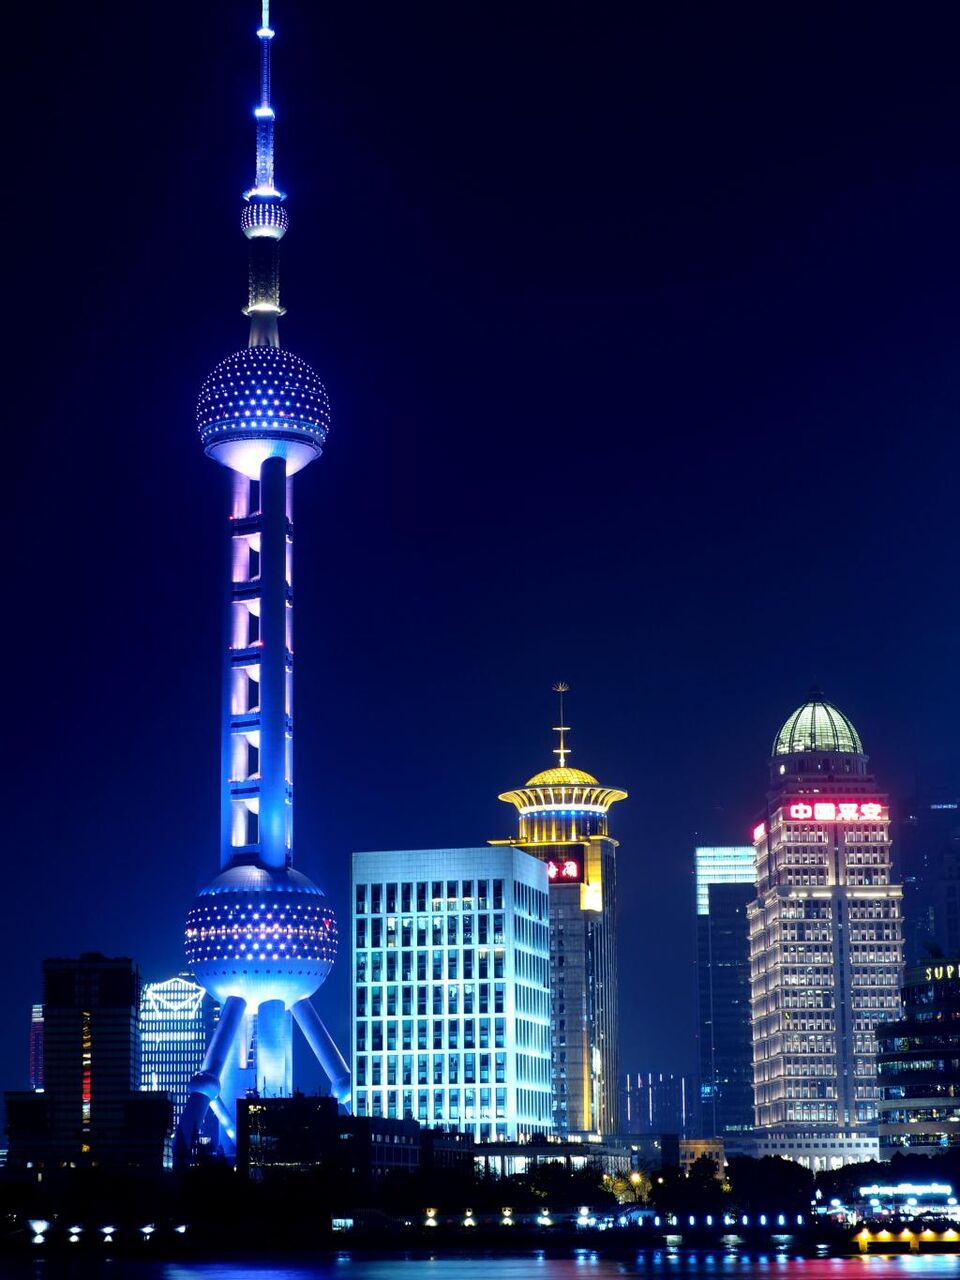 上海東方明珠テレビタワー 夜景 中国 川 建物 夜 高解像度画像のレーヨンヨnn区市サンちゃんの壁紙人民共和国 材料を入力します 壁紙